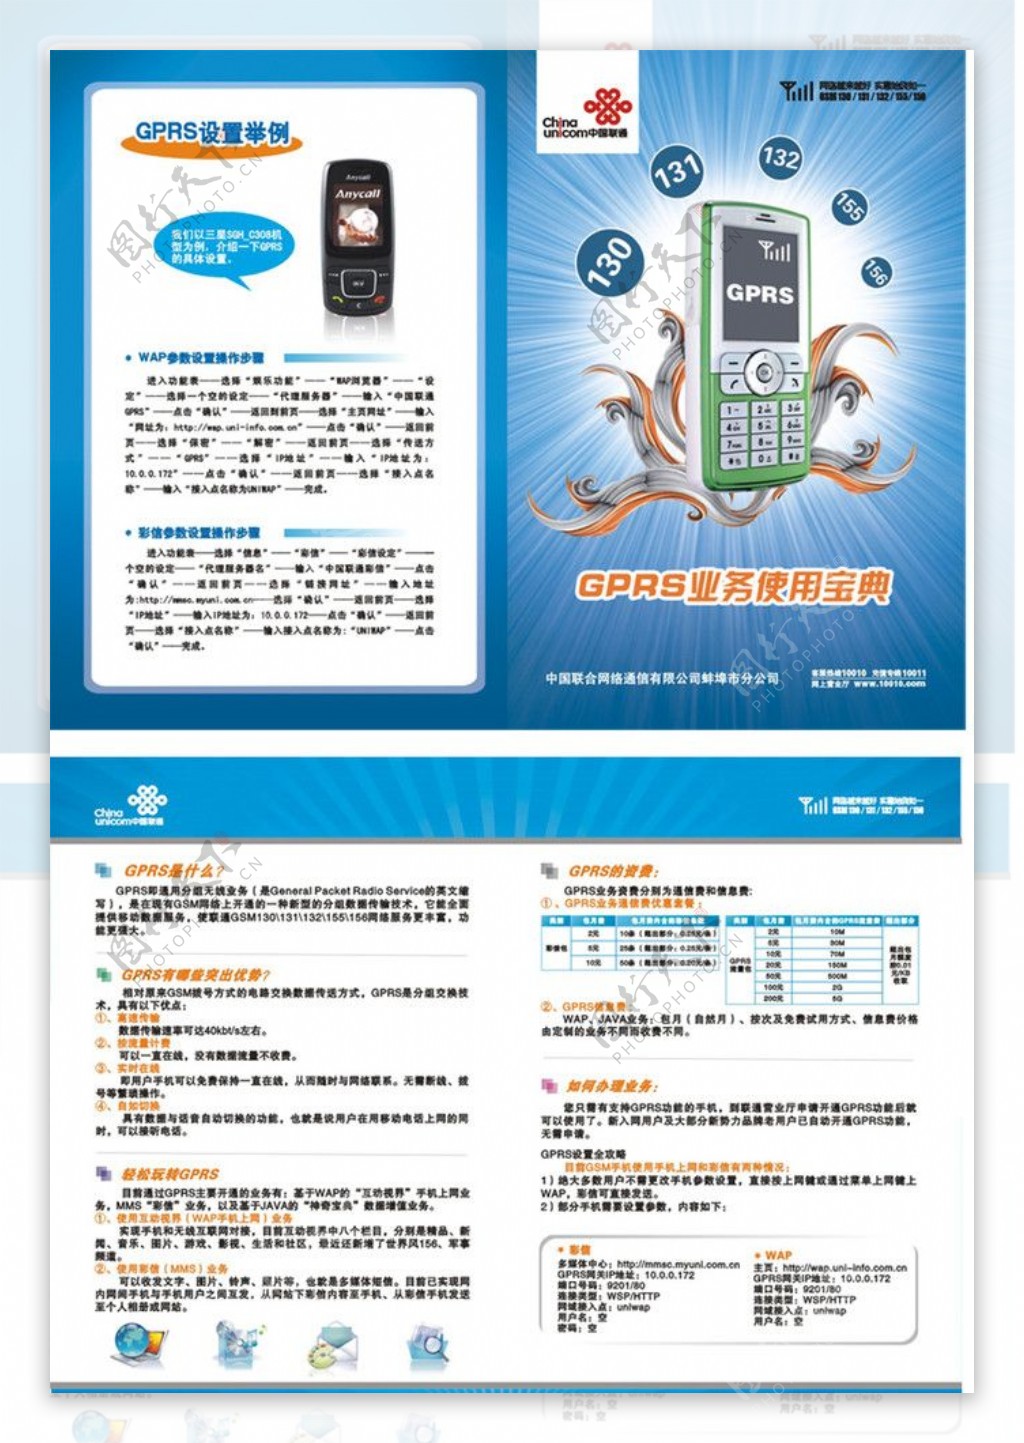 中国联通GPRS宣传单折页图片